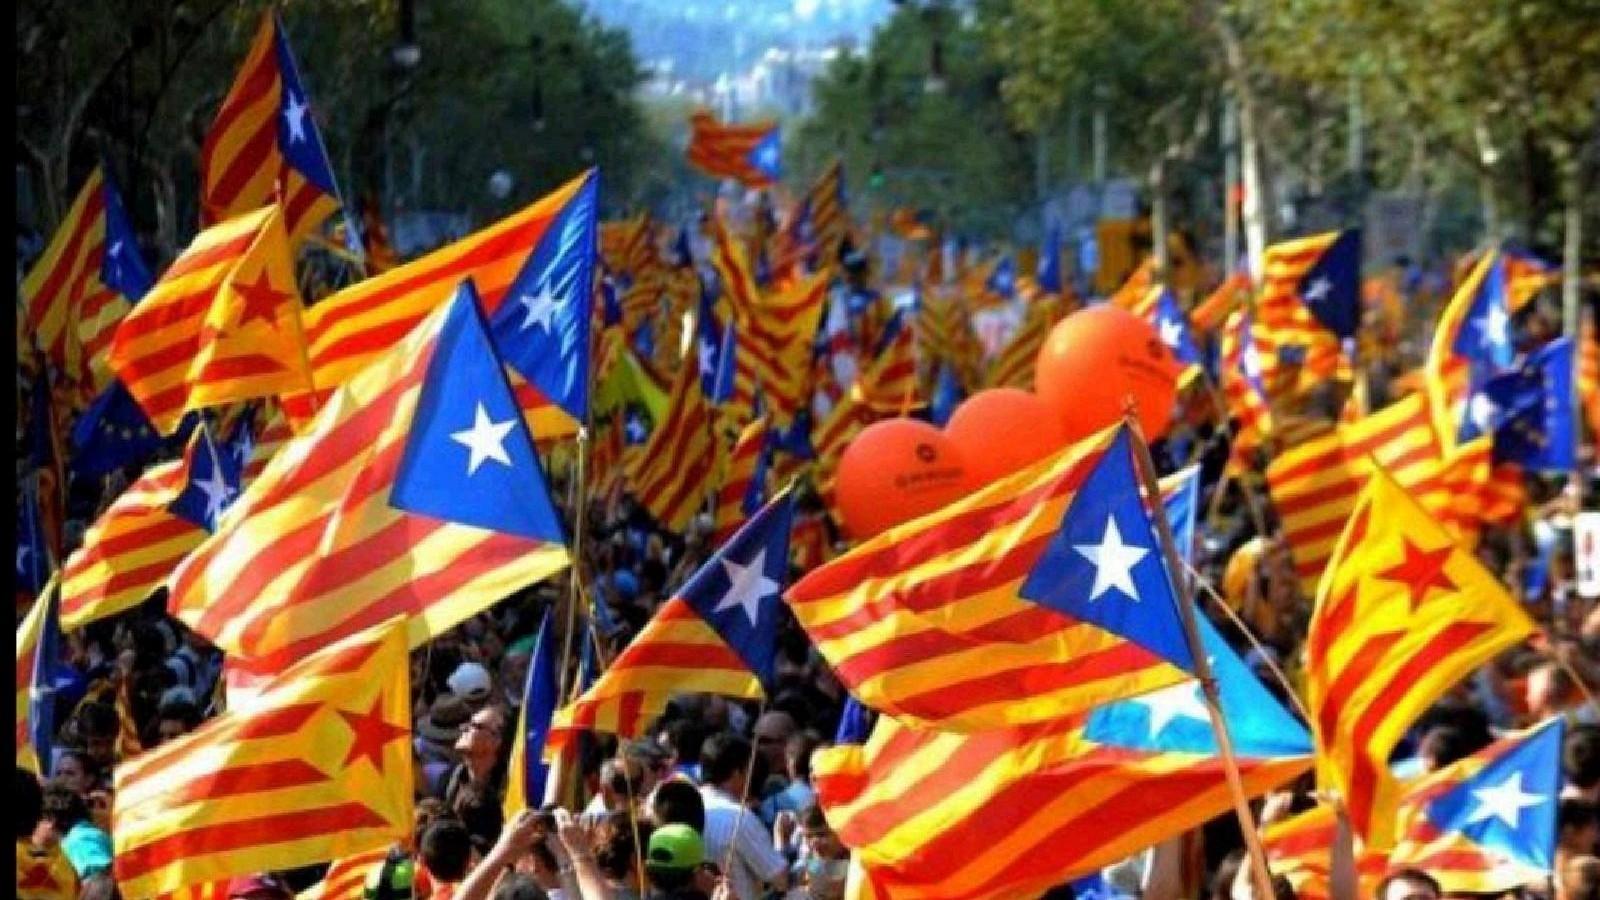 La trasferta: Barcellona e la Rambla rivestita di giallo e rosso